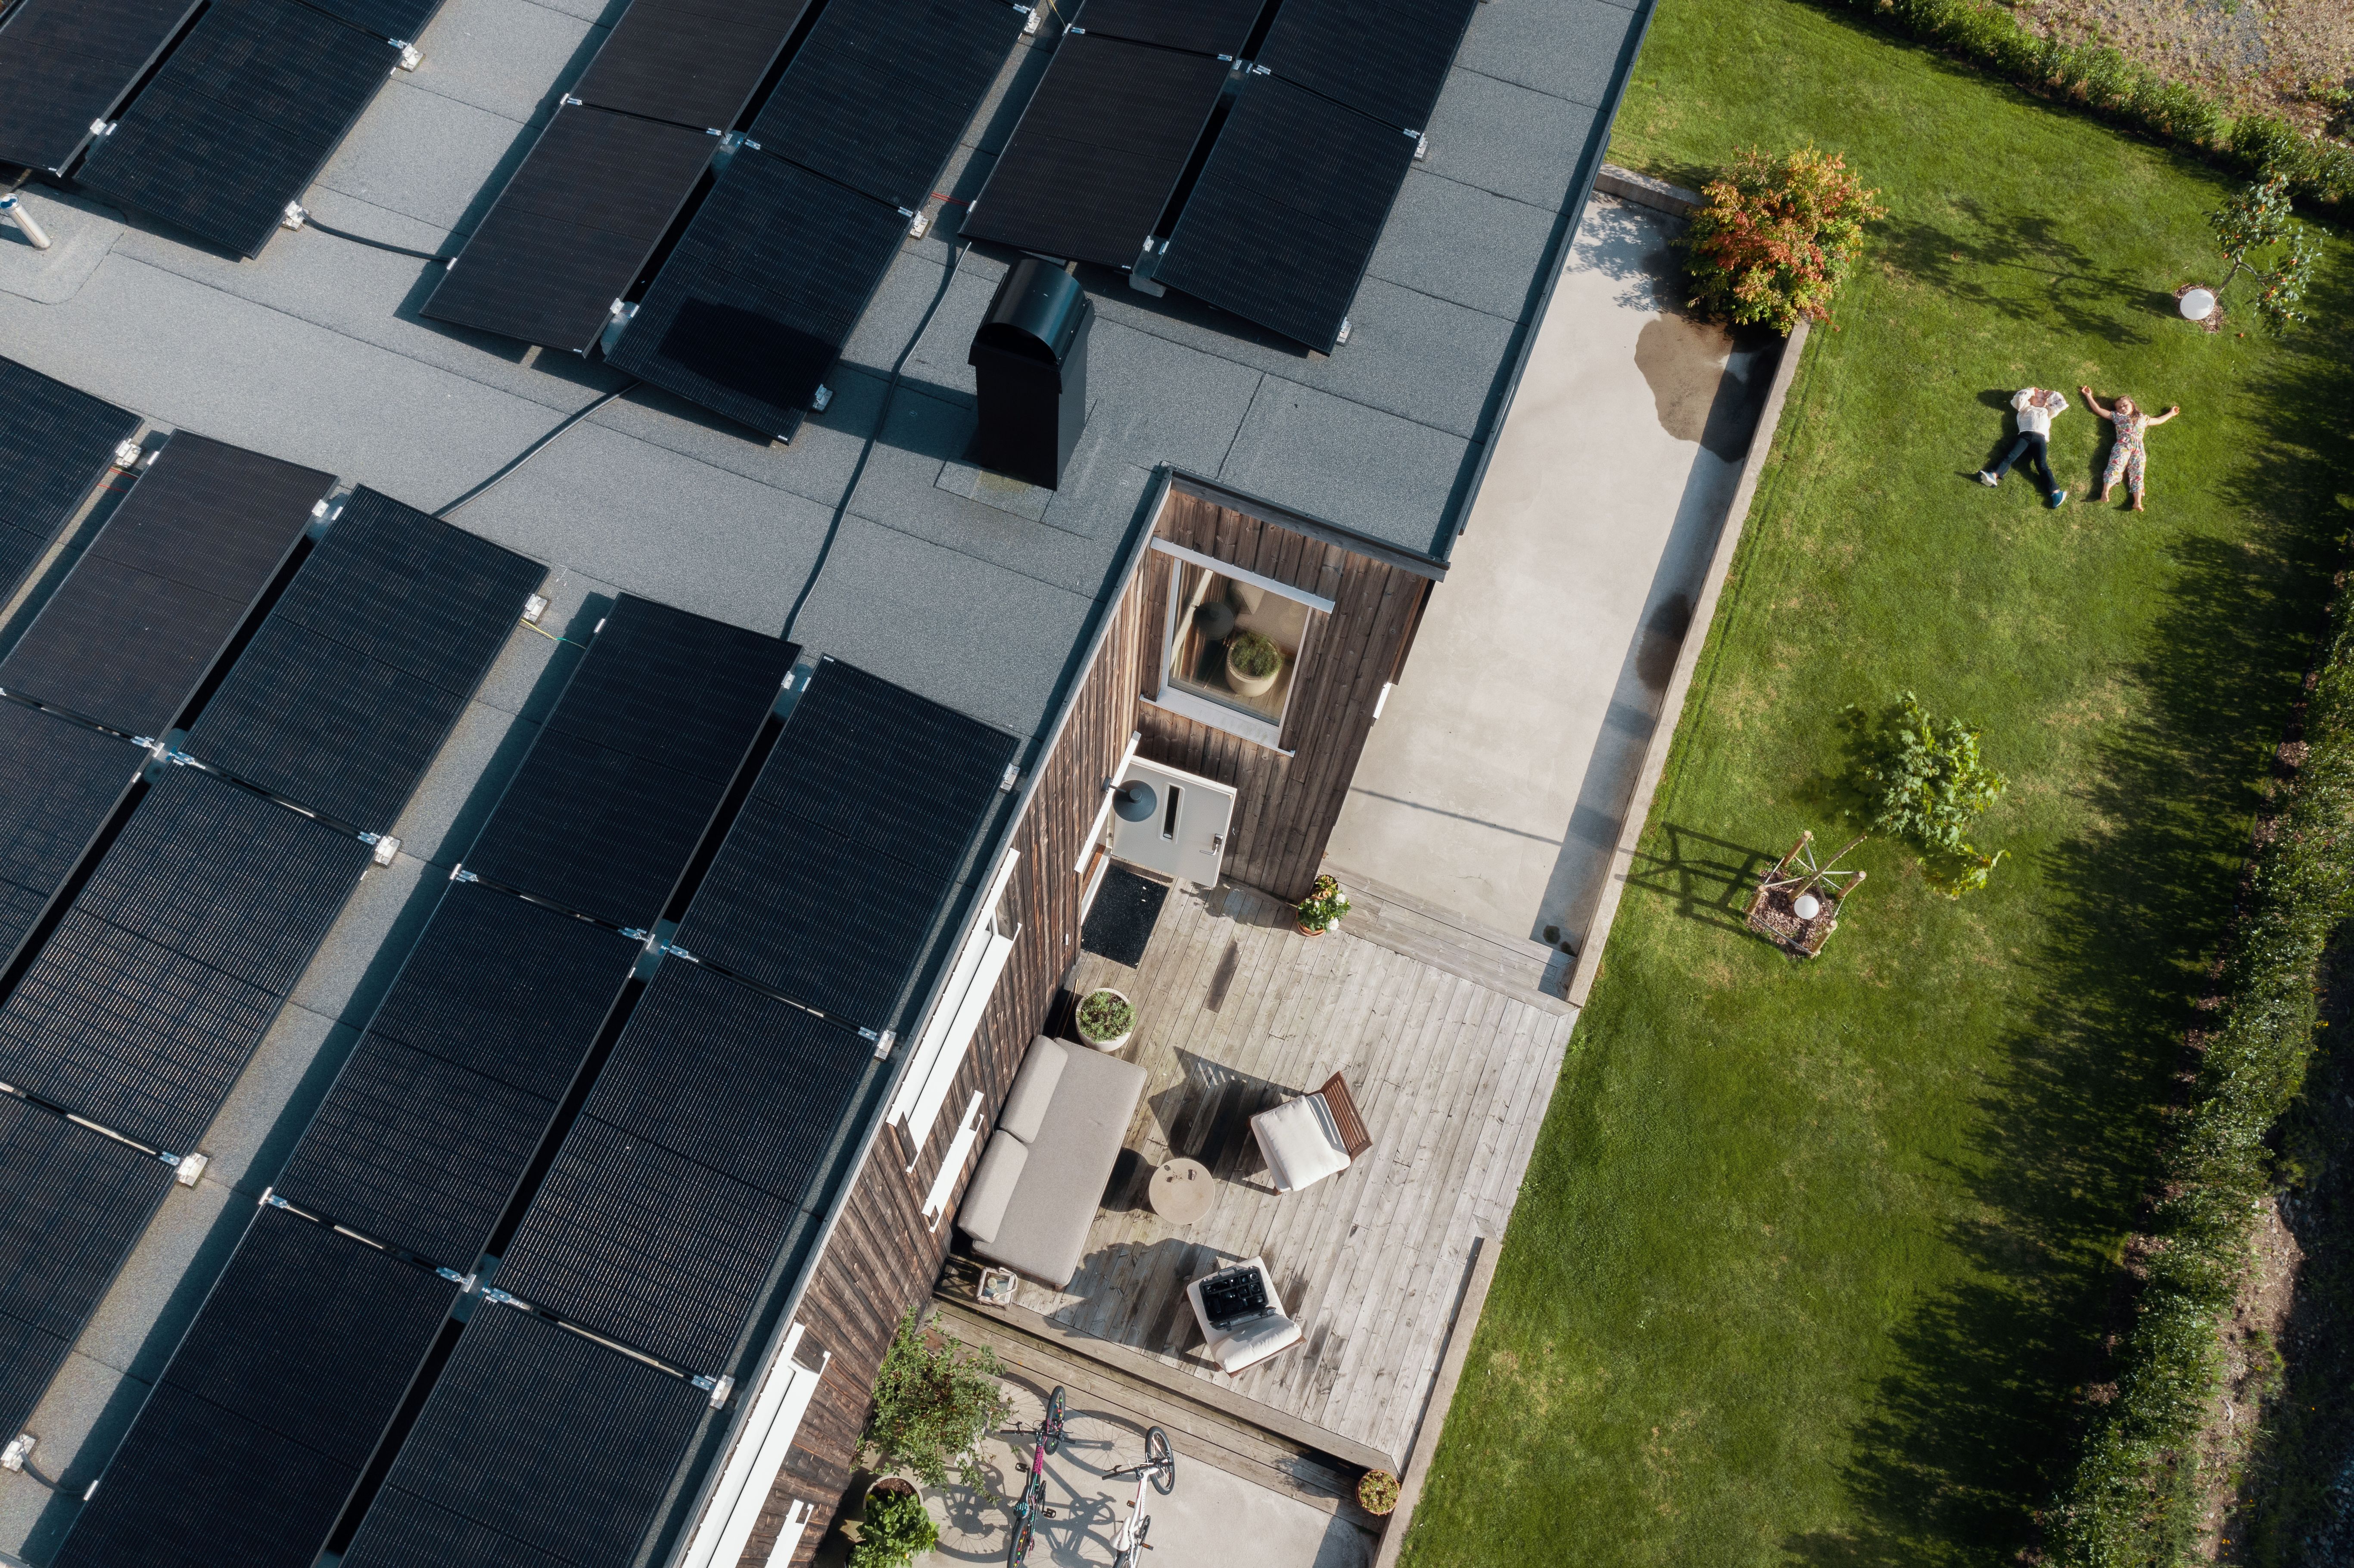 Bilde av enebolig med solceller på taket.